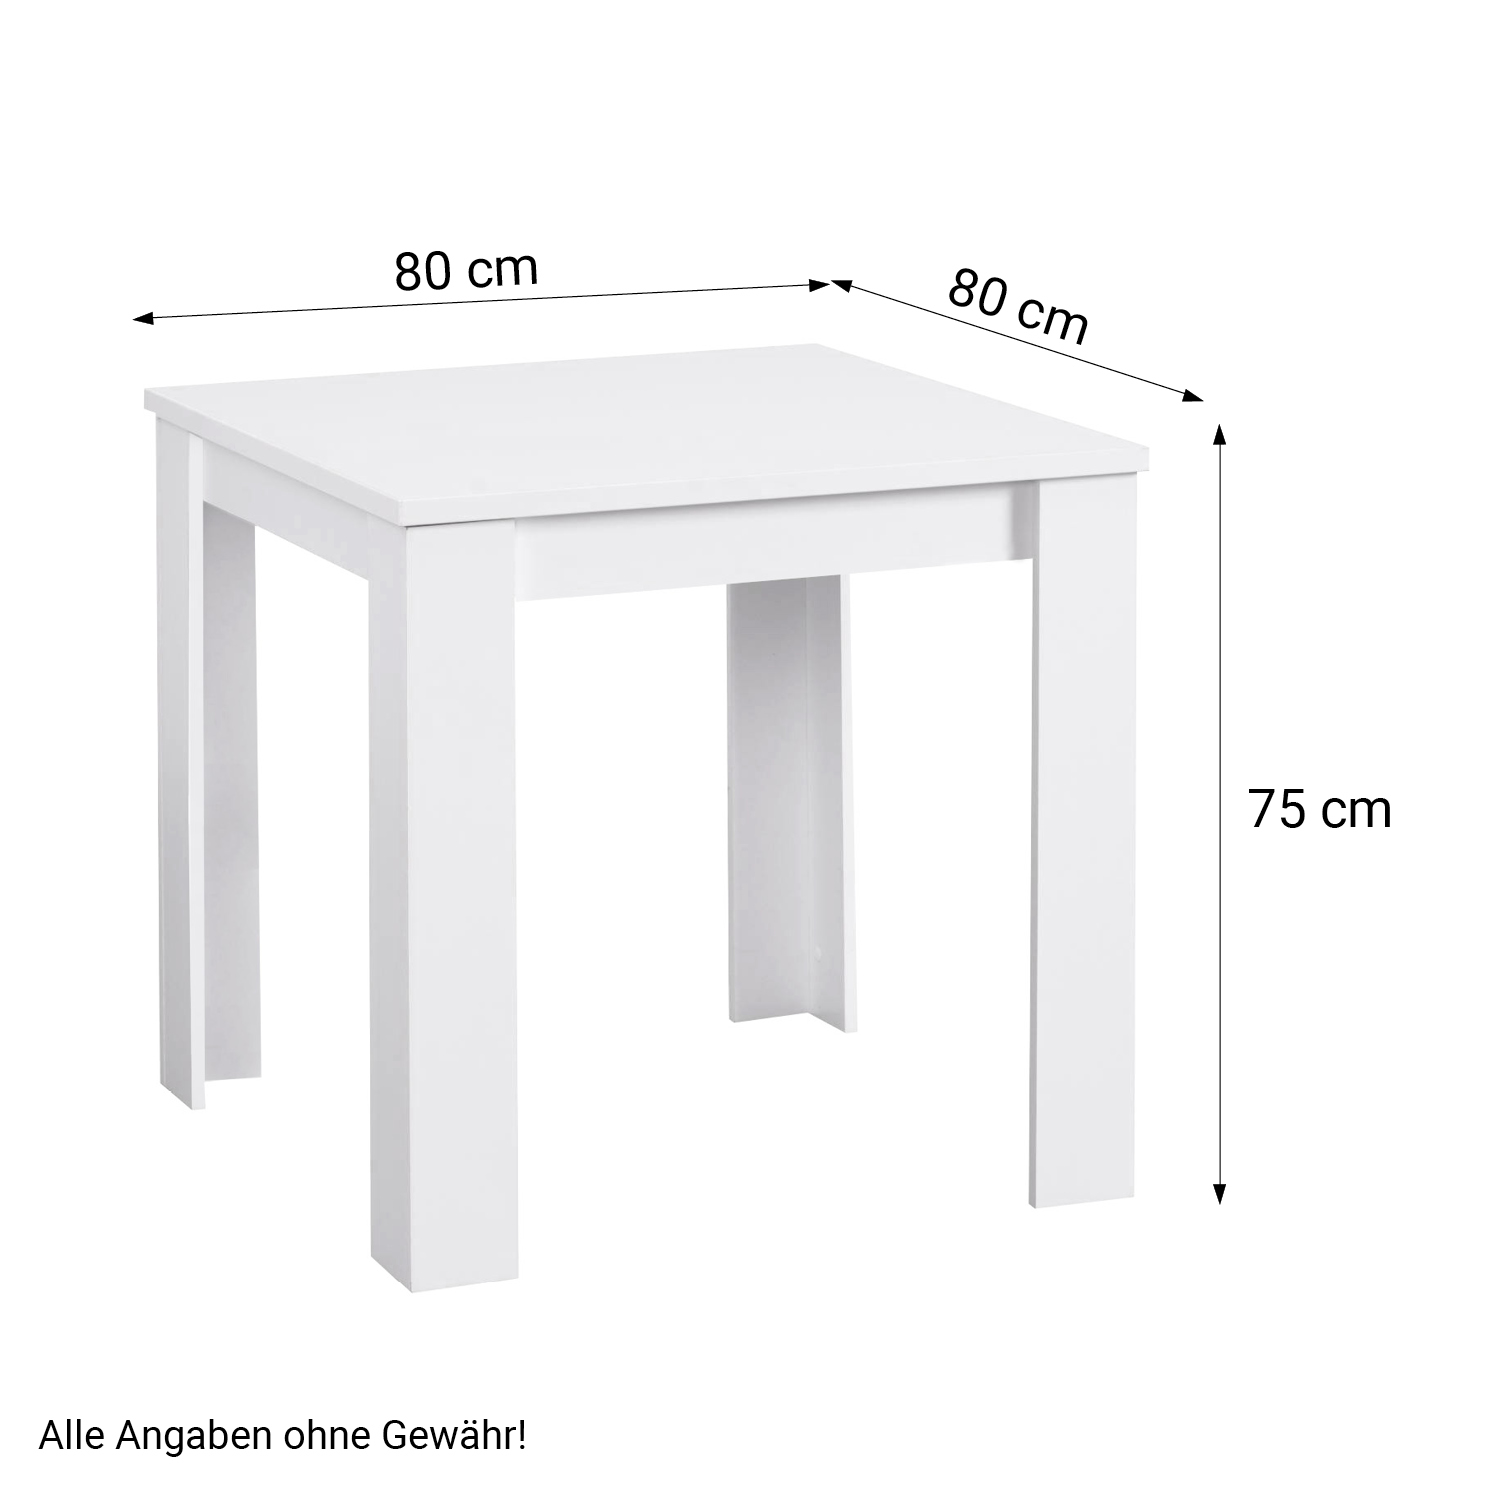 Table 80x80 cm Group Salle à Manger 2 Chaises Anthracite Table à Manger en Bois Blanc